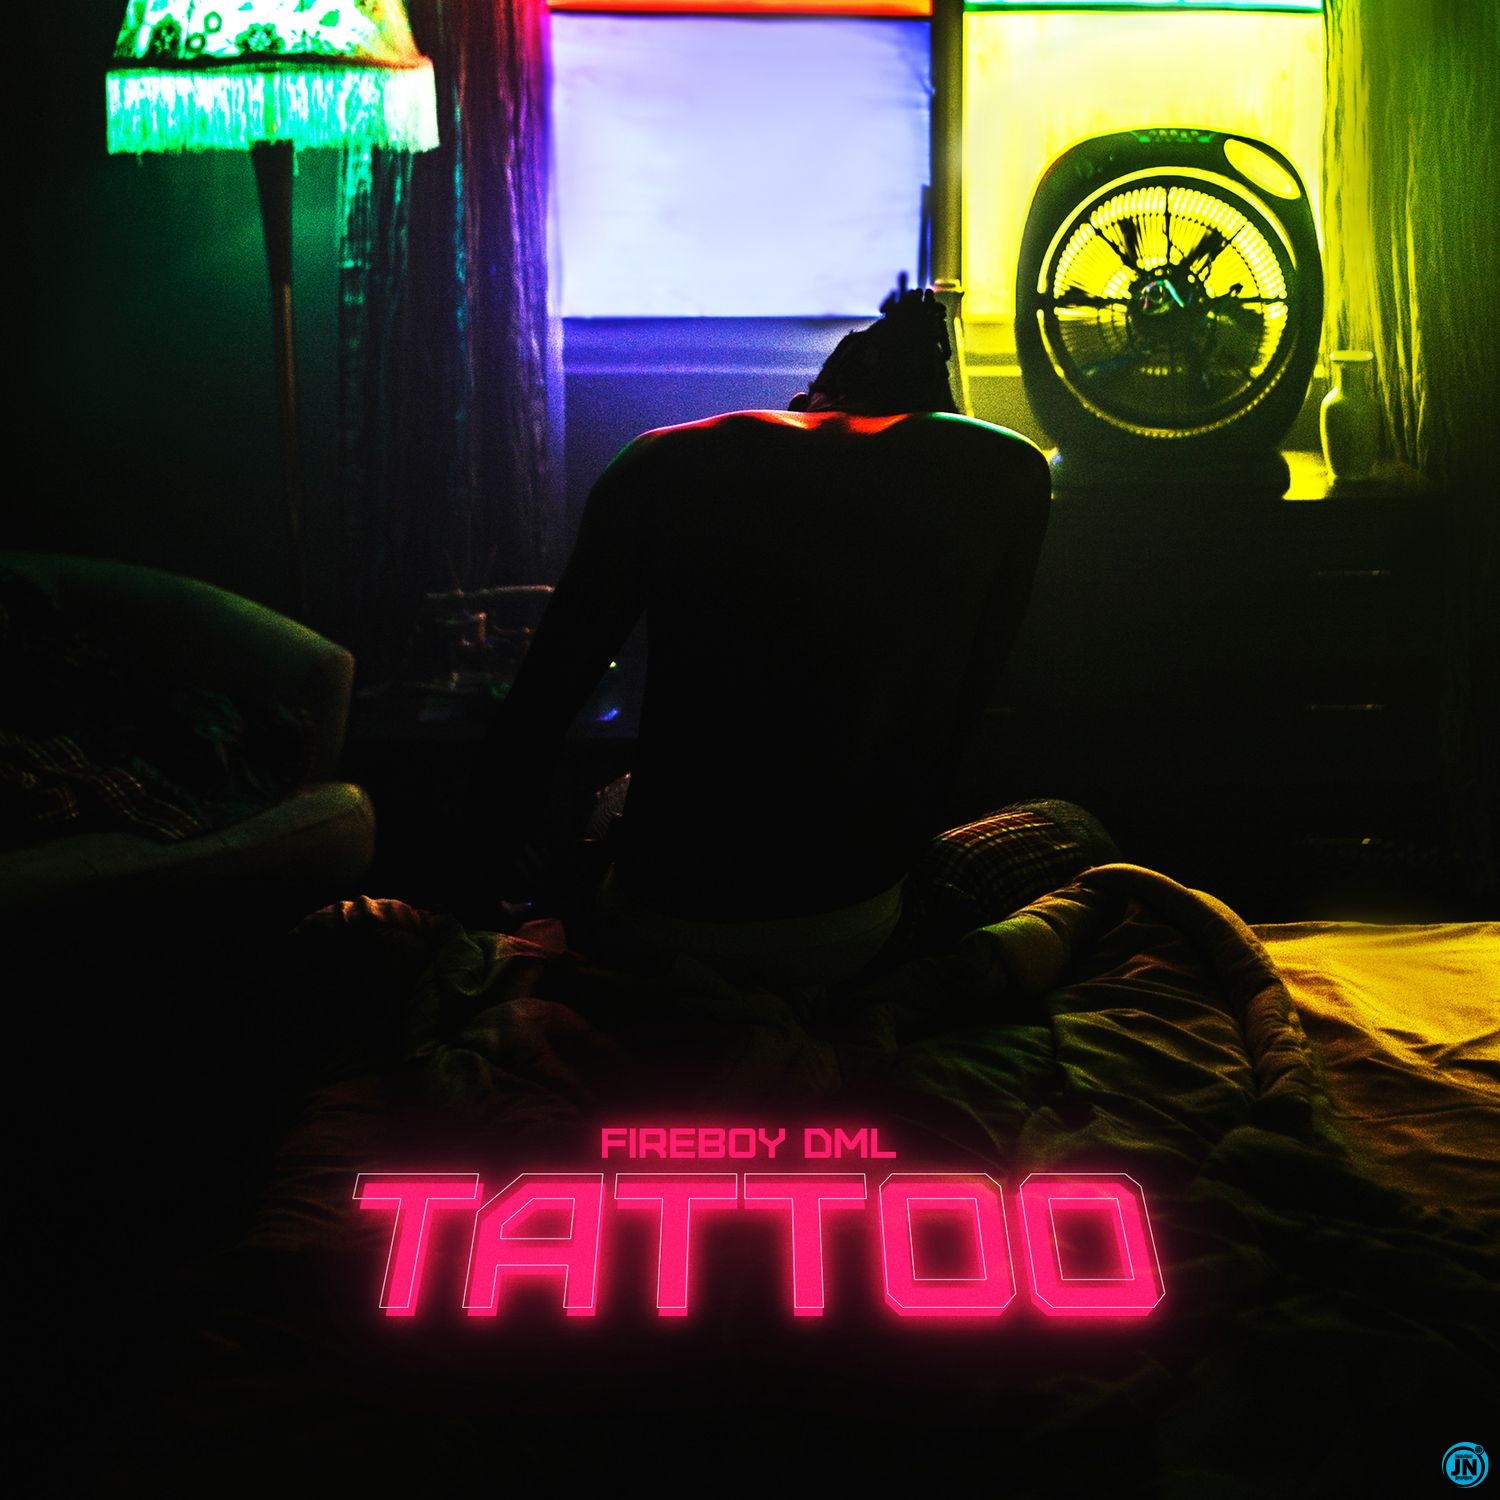 Fireboy DML - Tattoo  Mp3 Download lyrics